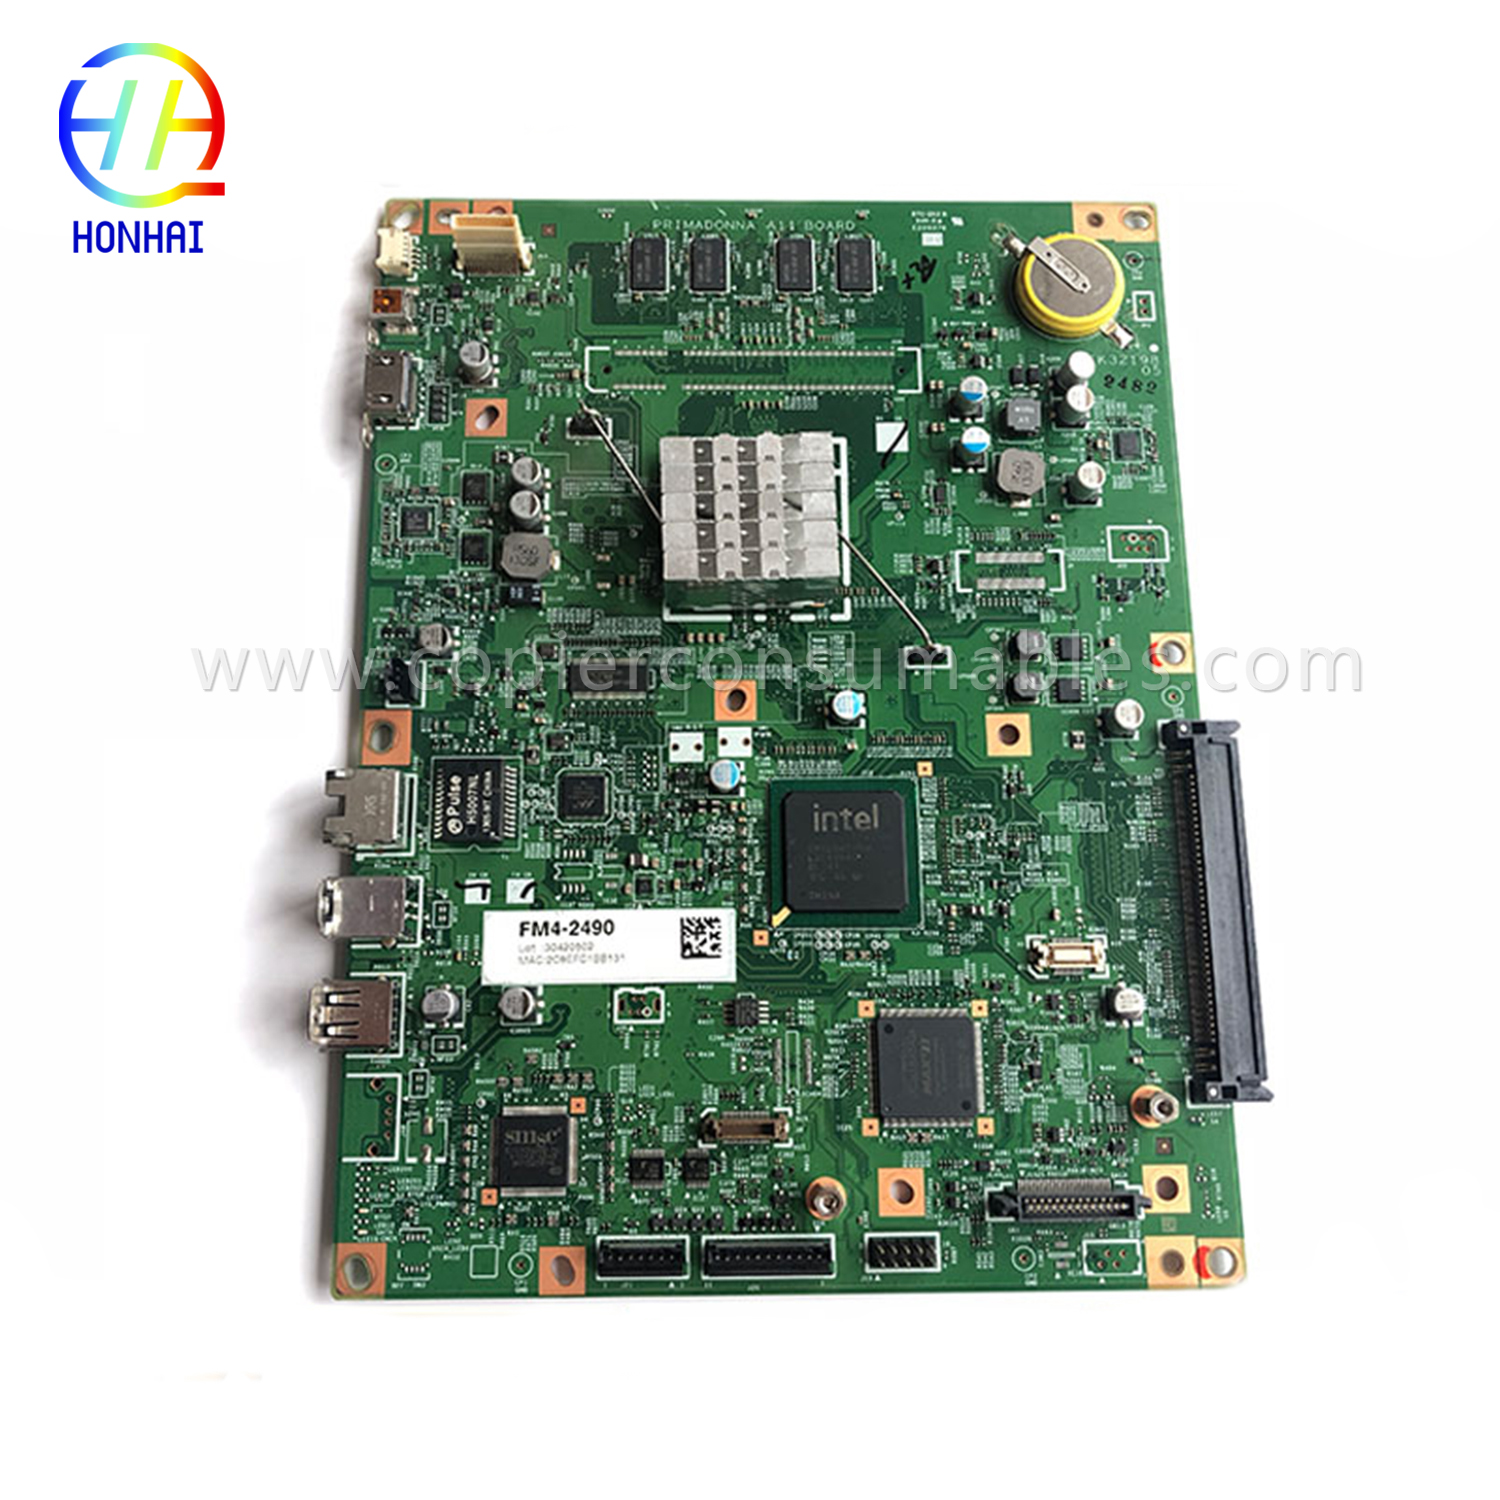 Main Controller PCB Board ho an'ny Canon IR Adv 6255 6265 6275 FM4-2490-000 OEM